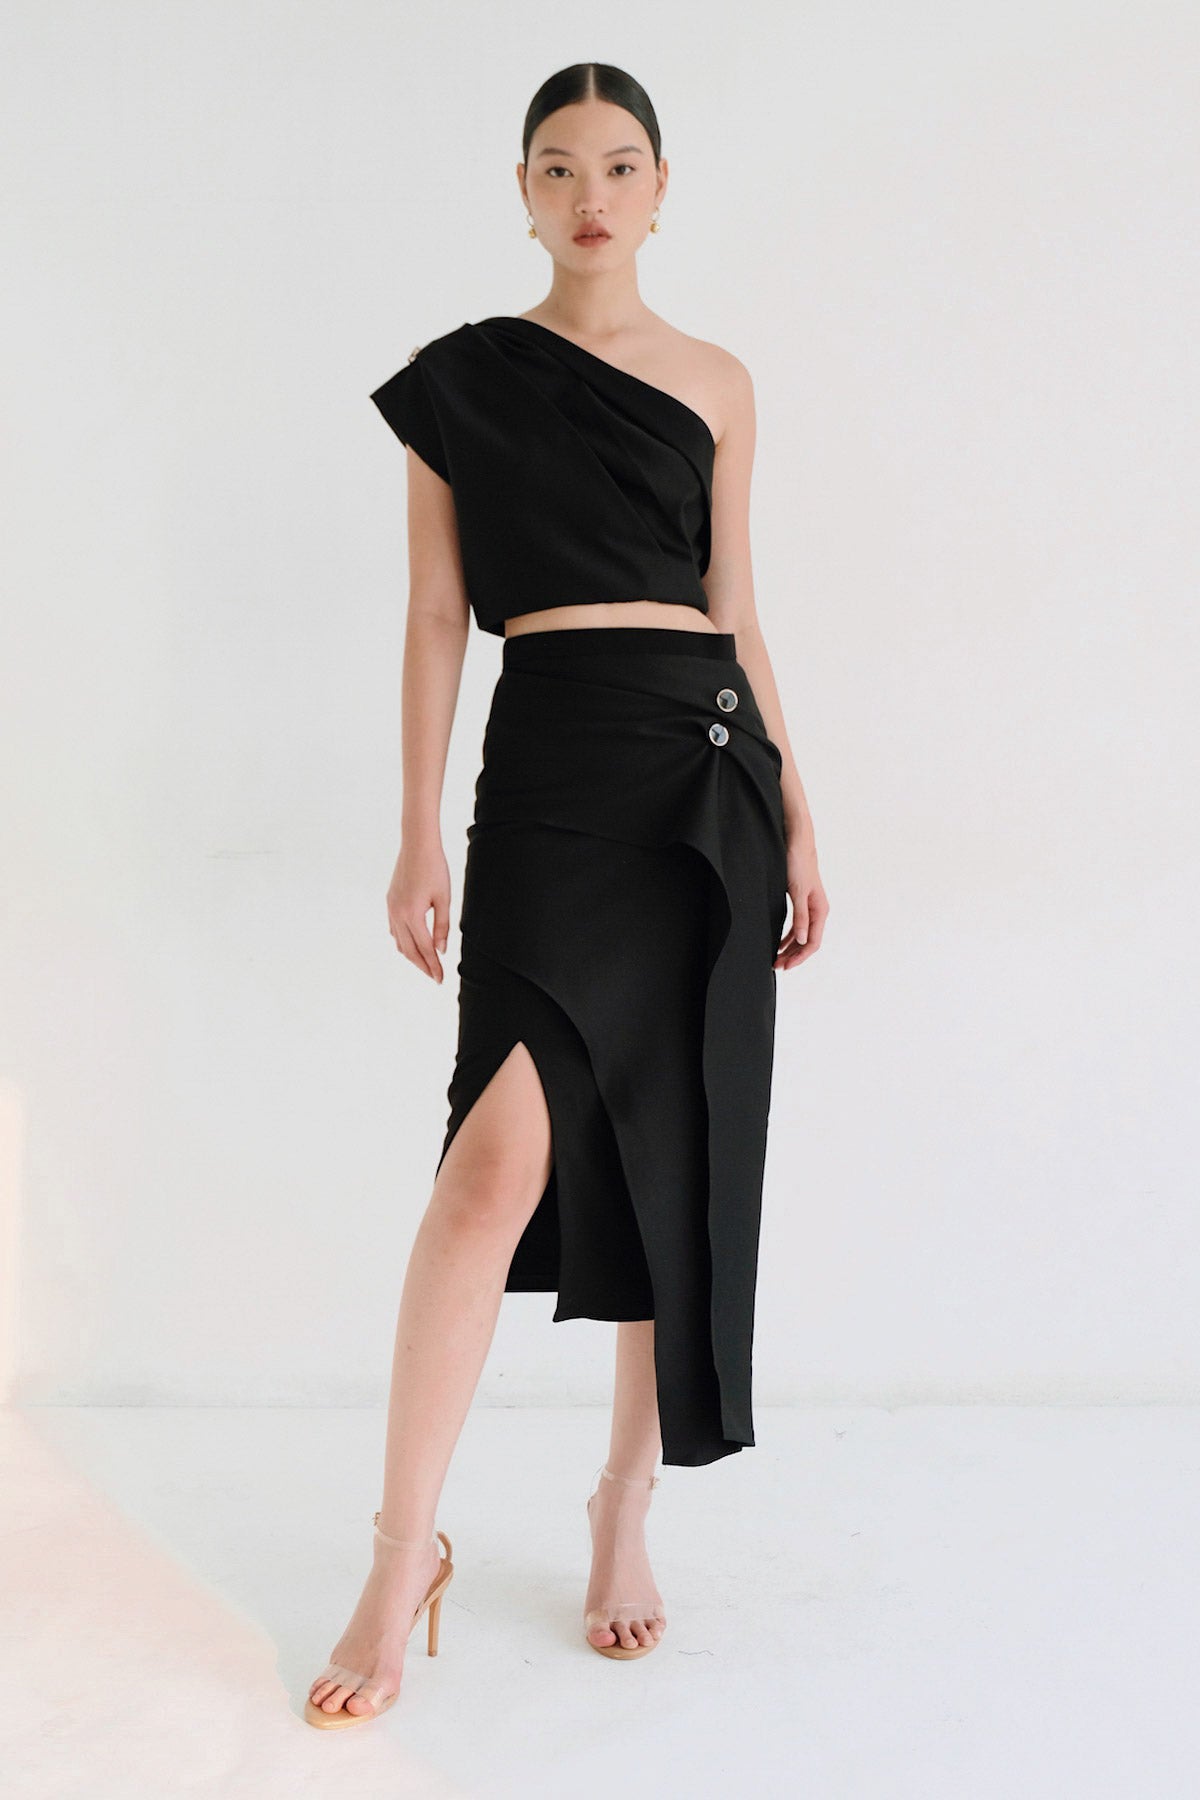 Mira Skirt In Black (1 Left)